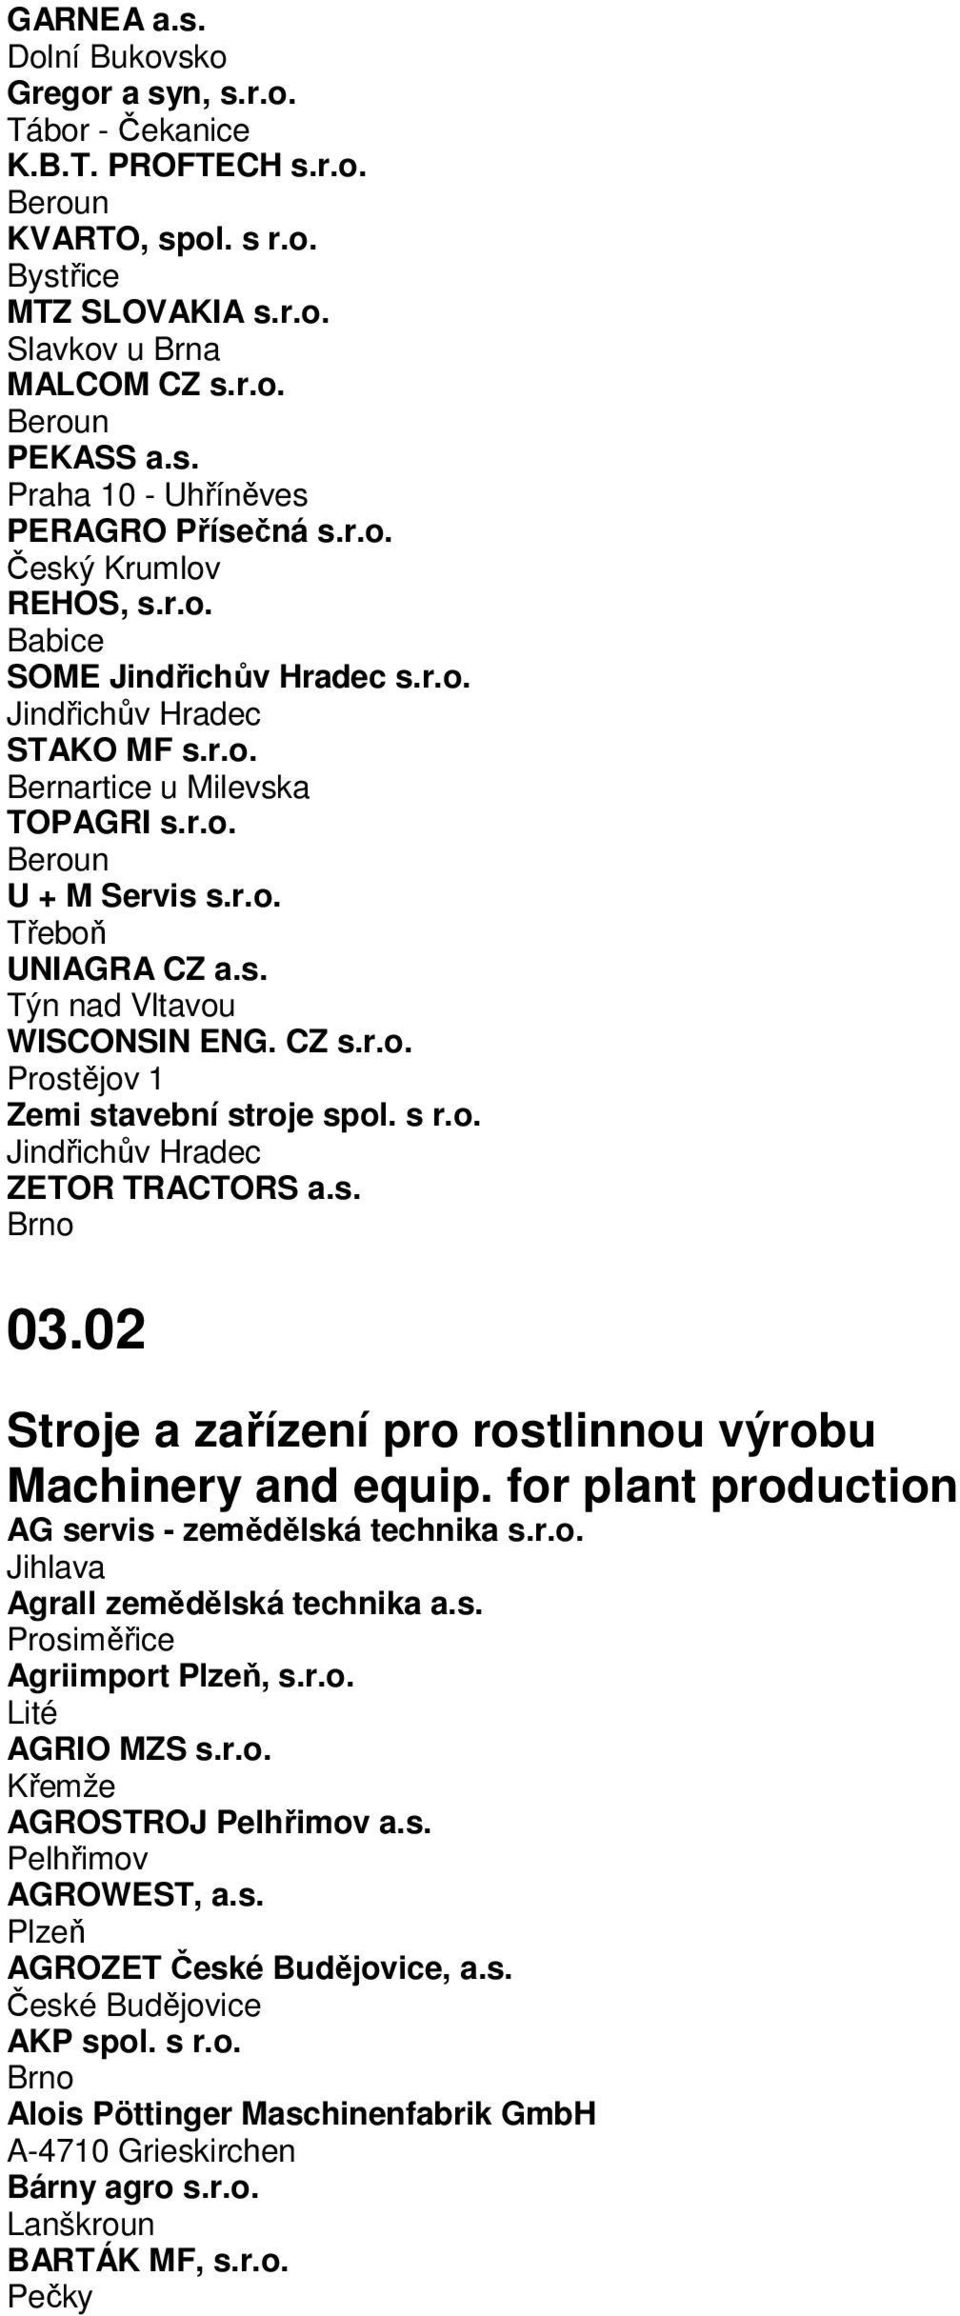 CZ s.r.o. Prostějov 1 Zemi stavební stroje spol. s r.o. Jindřichův Hradec ZETOR TRACTORS a.s. Brno 03.02 Stroje a zařízení pro rostlinnou výrobu Machinery and equip.